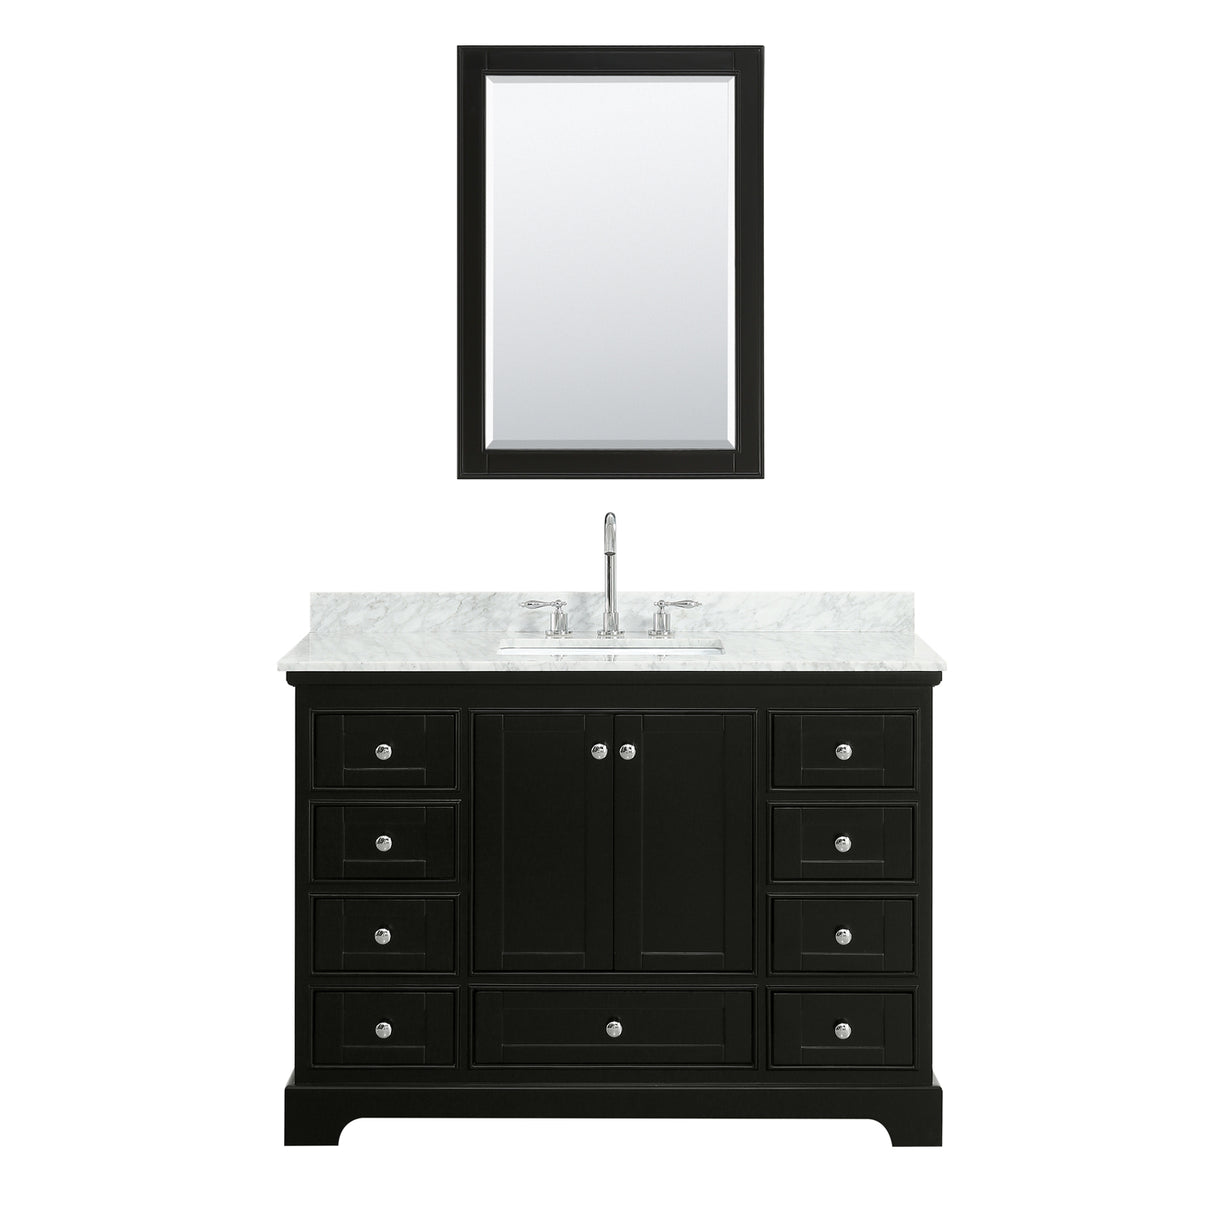 Deborah 48 Inch Single Bathroom Vanity in Dark Espresso White Carrara Marble Countertop Undermount Square Sink and Medicine Cabinet